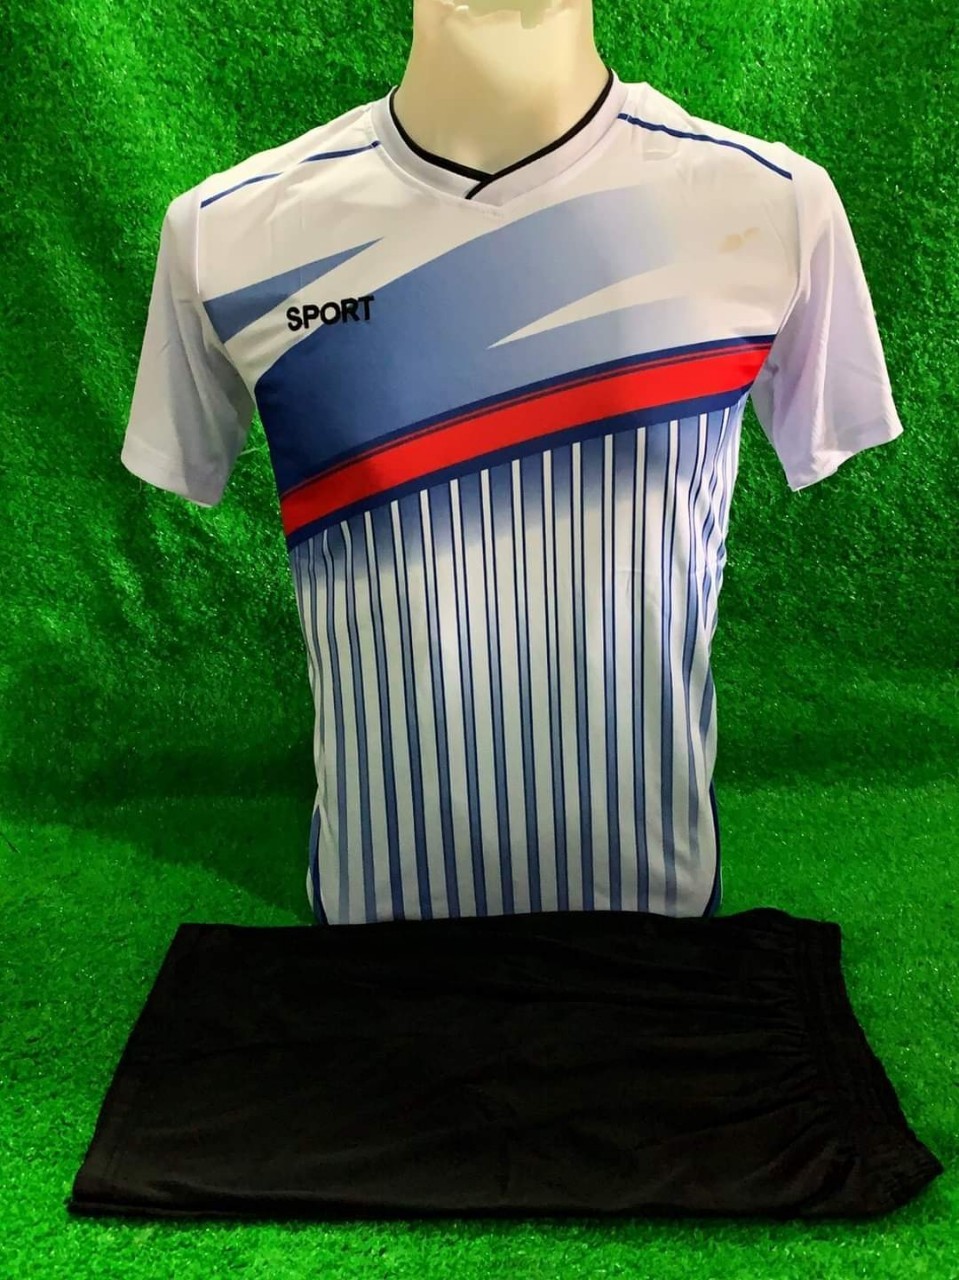 ชุดกีฬาใส่สบายลายเปลี่ยนใหม่ตลอดลายได้ไม่ตรงกับรูปที่ลงไว้ เสื้อกีฬาผู้ชายได้ทั้ง  เสื้อ กางเกง ชุดกีฬาราคาถูก Sport Cloth Sport Wear Football Suit - Annshop  1585200217 - Thaipick